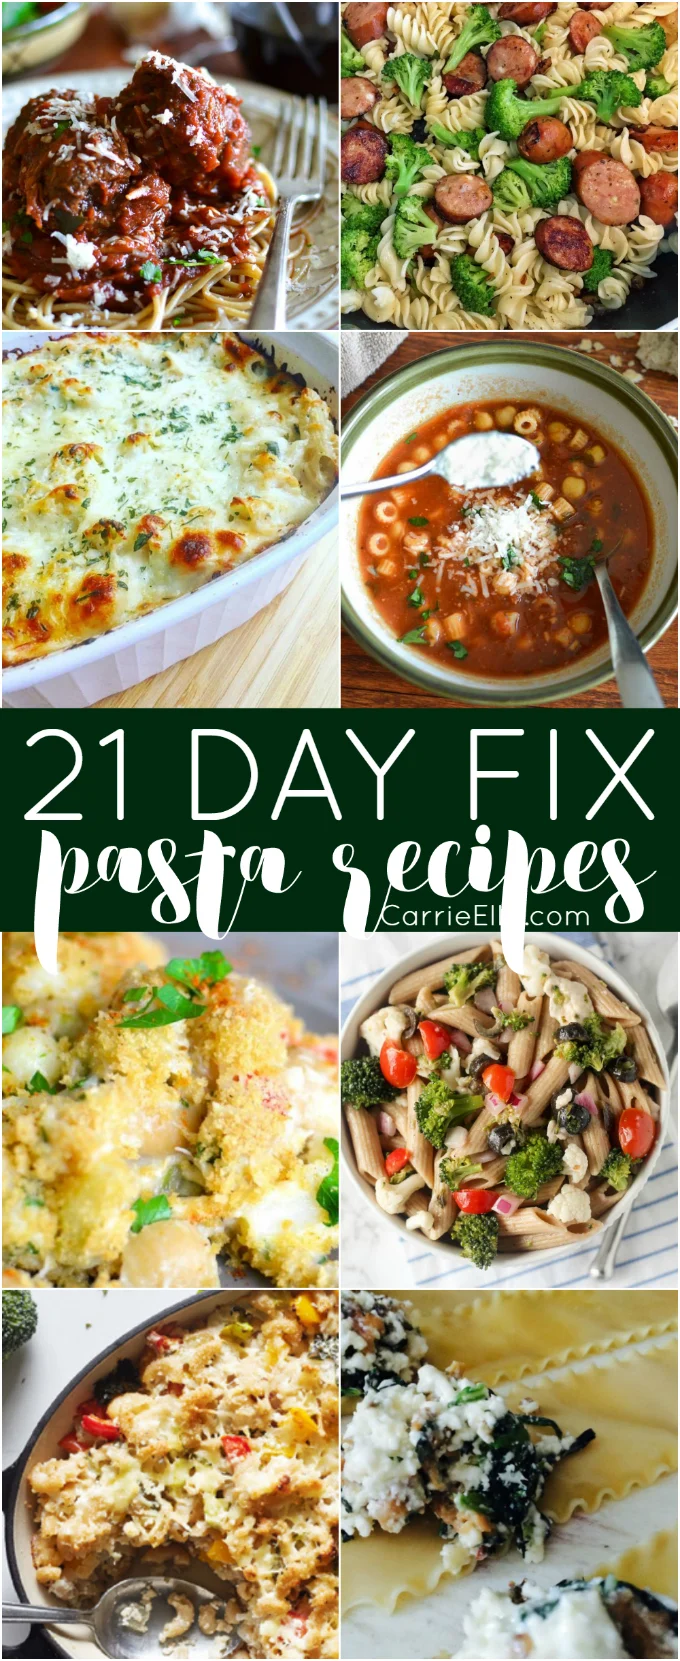 21 Day Fix Pasta Recipes